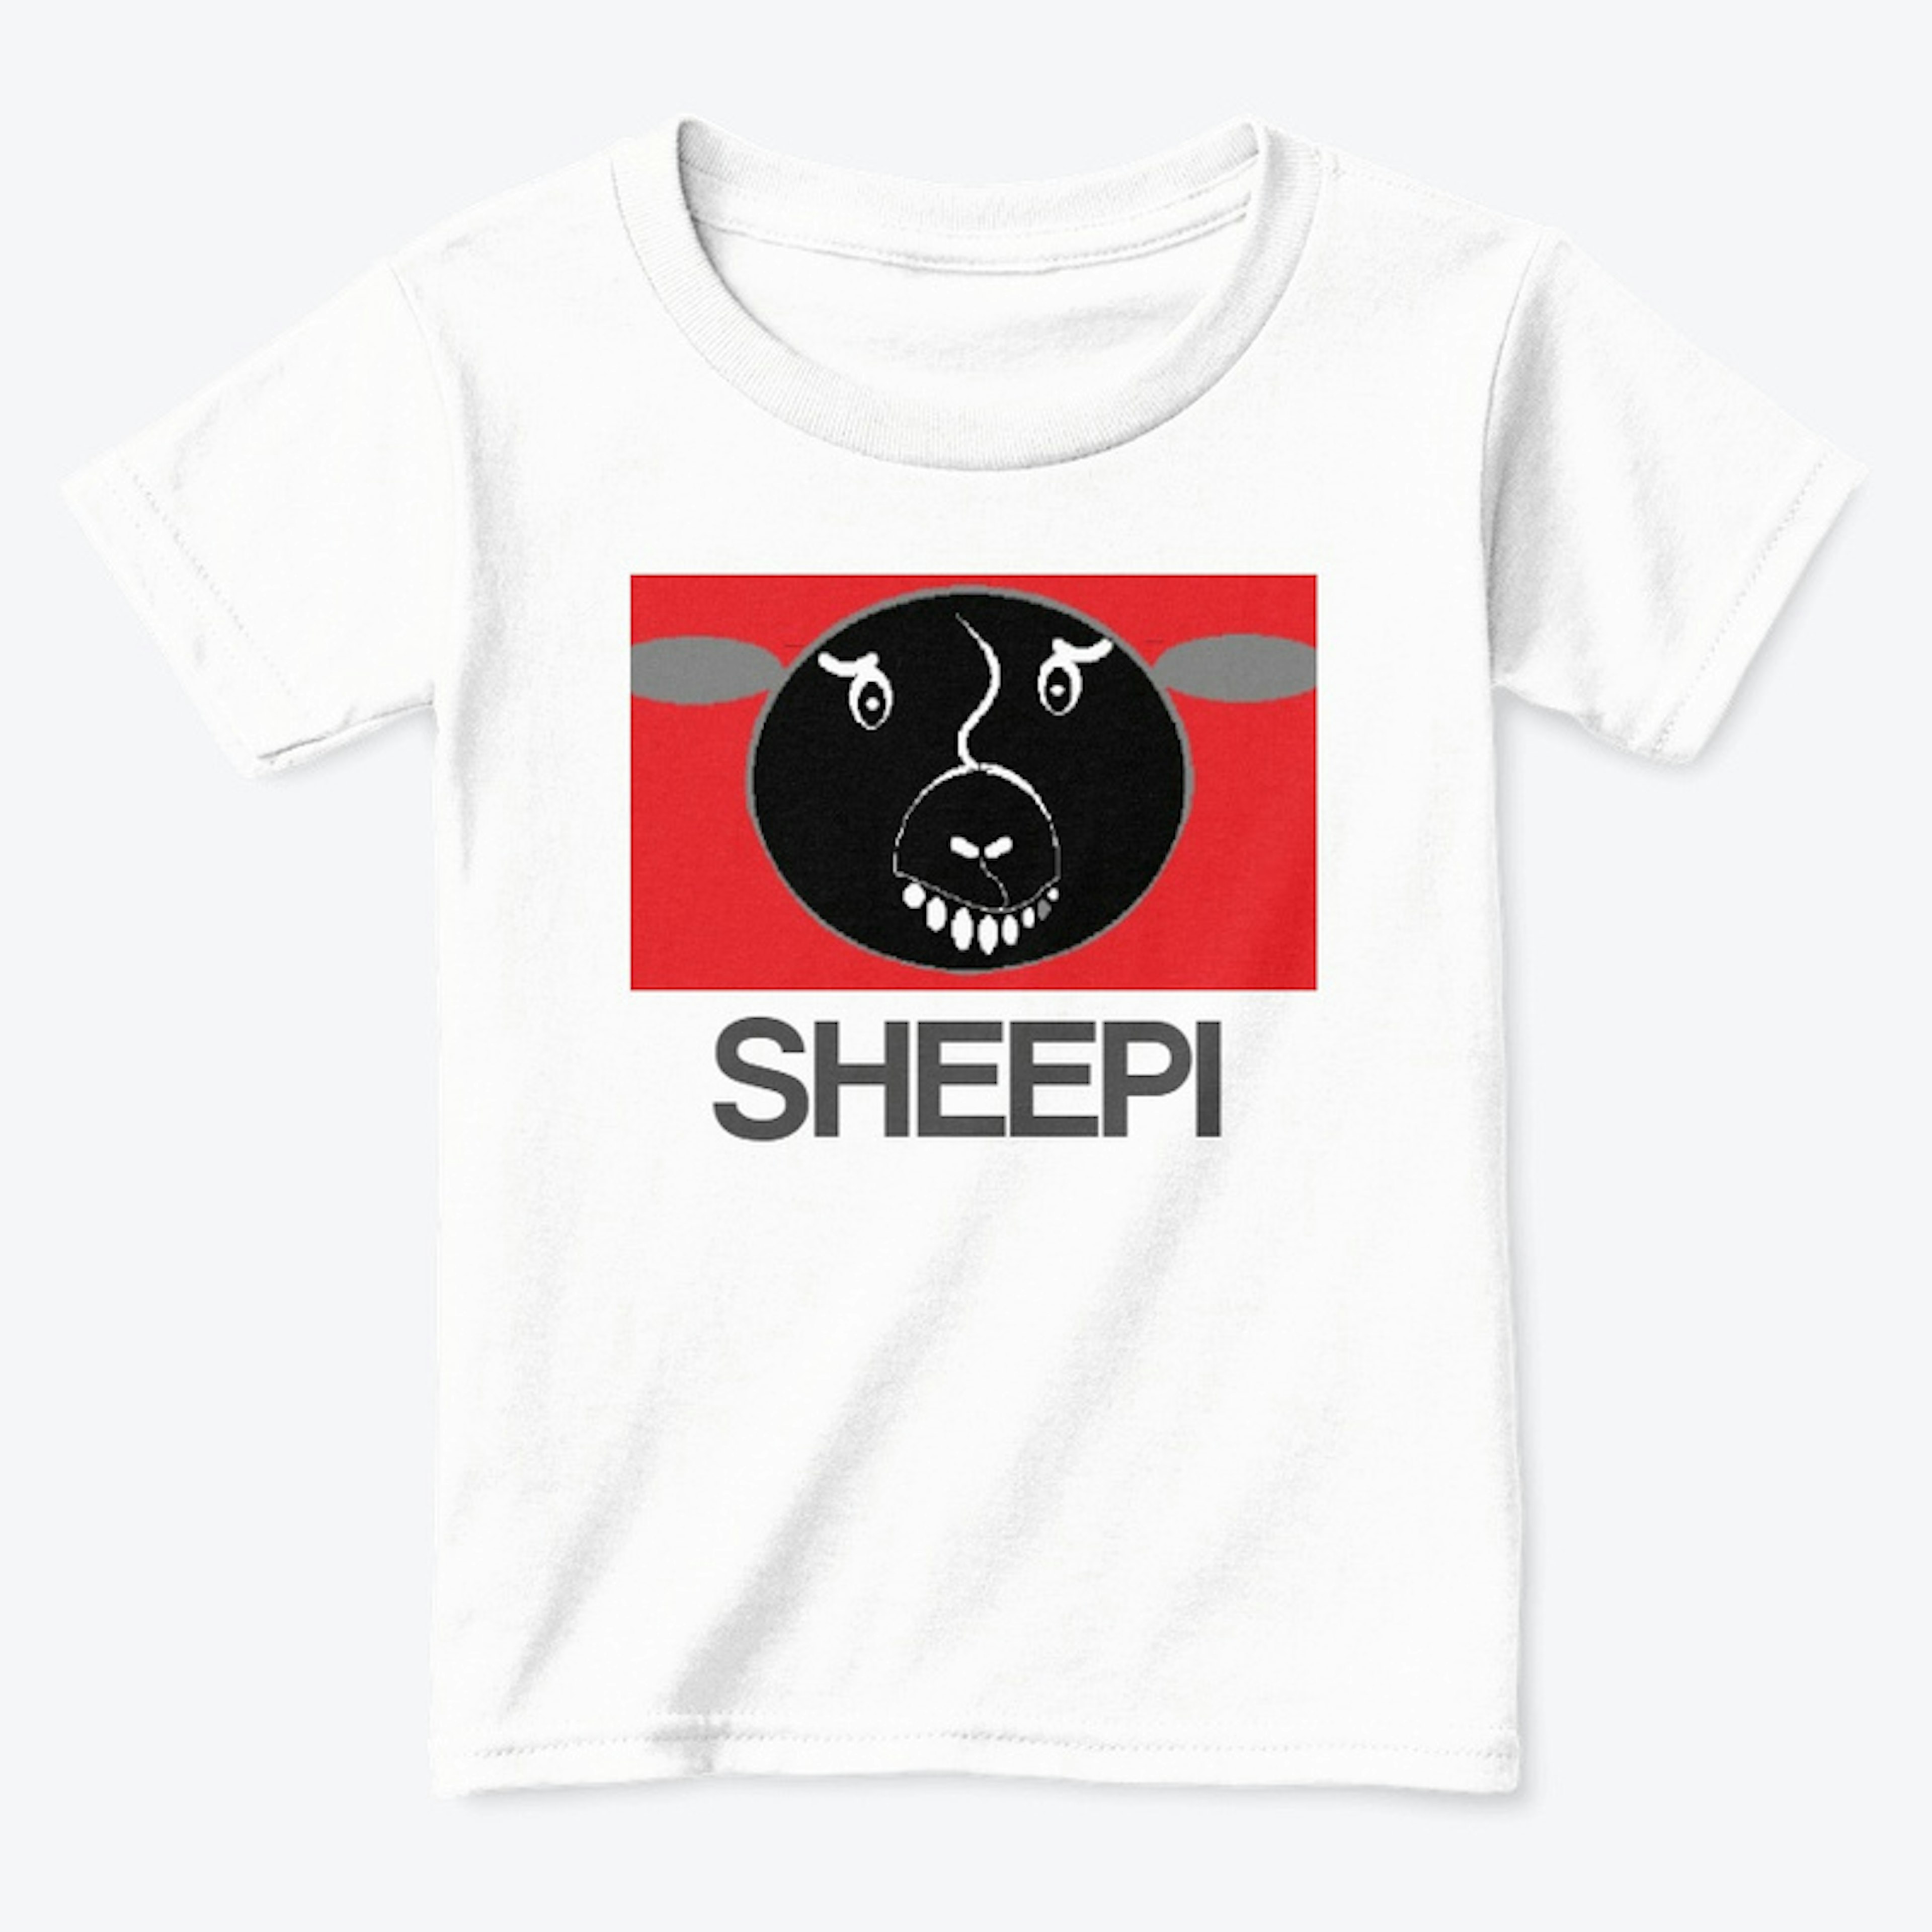 SHEEPI Code RED!